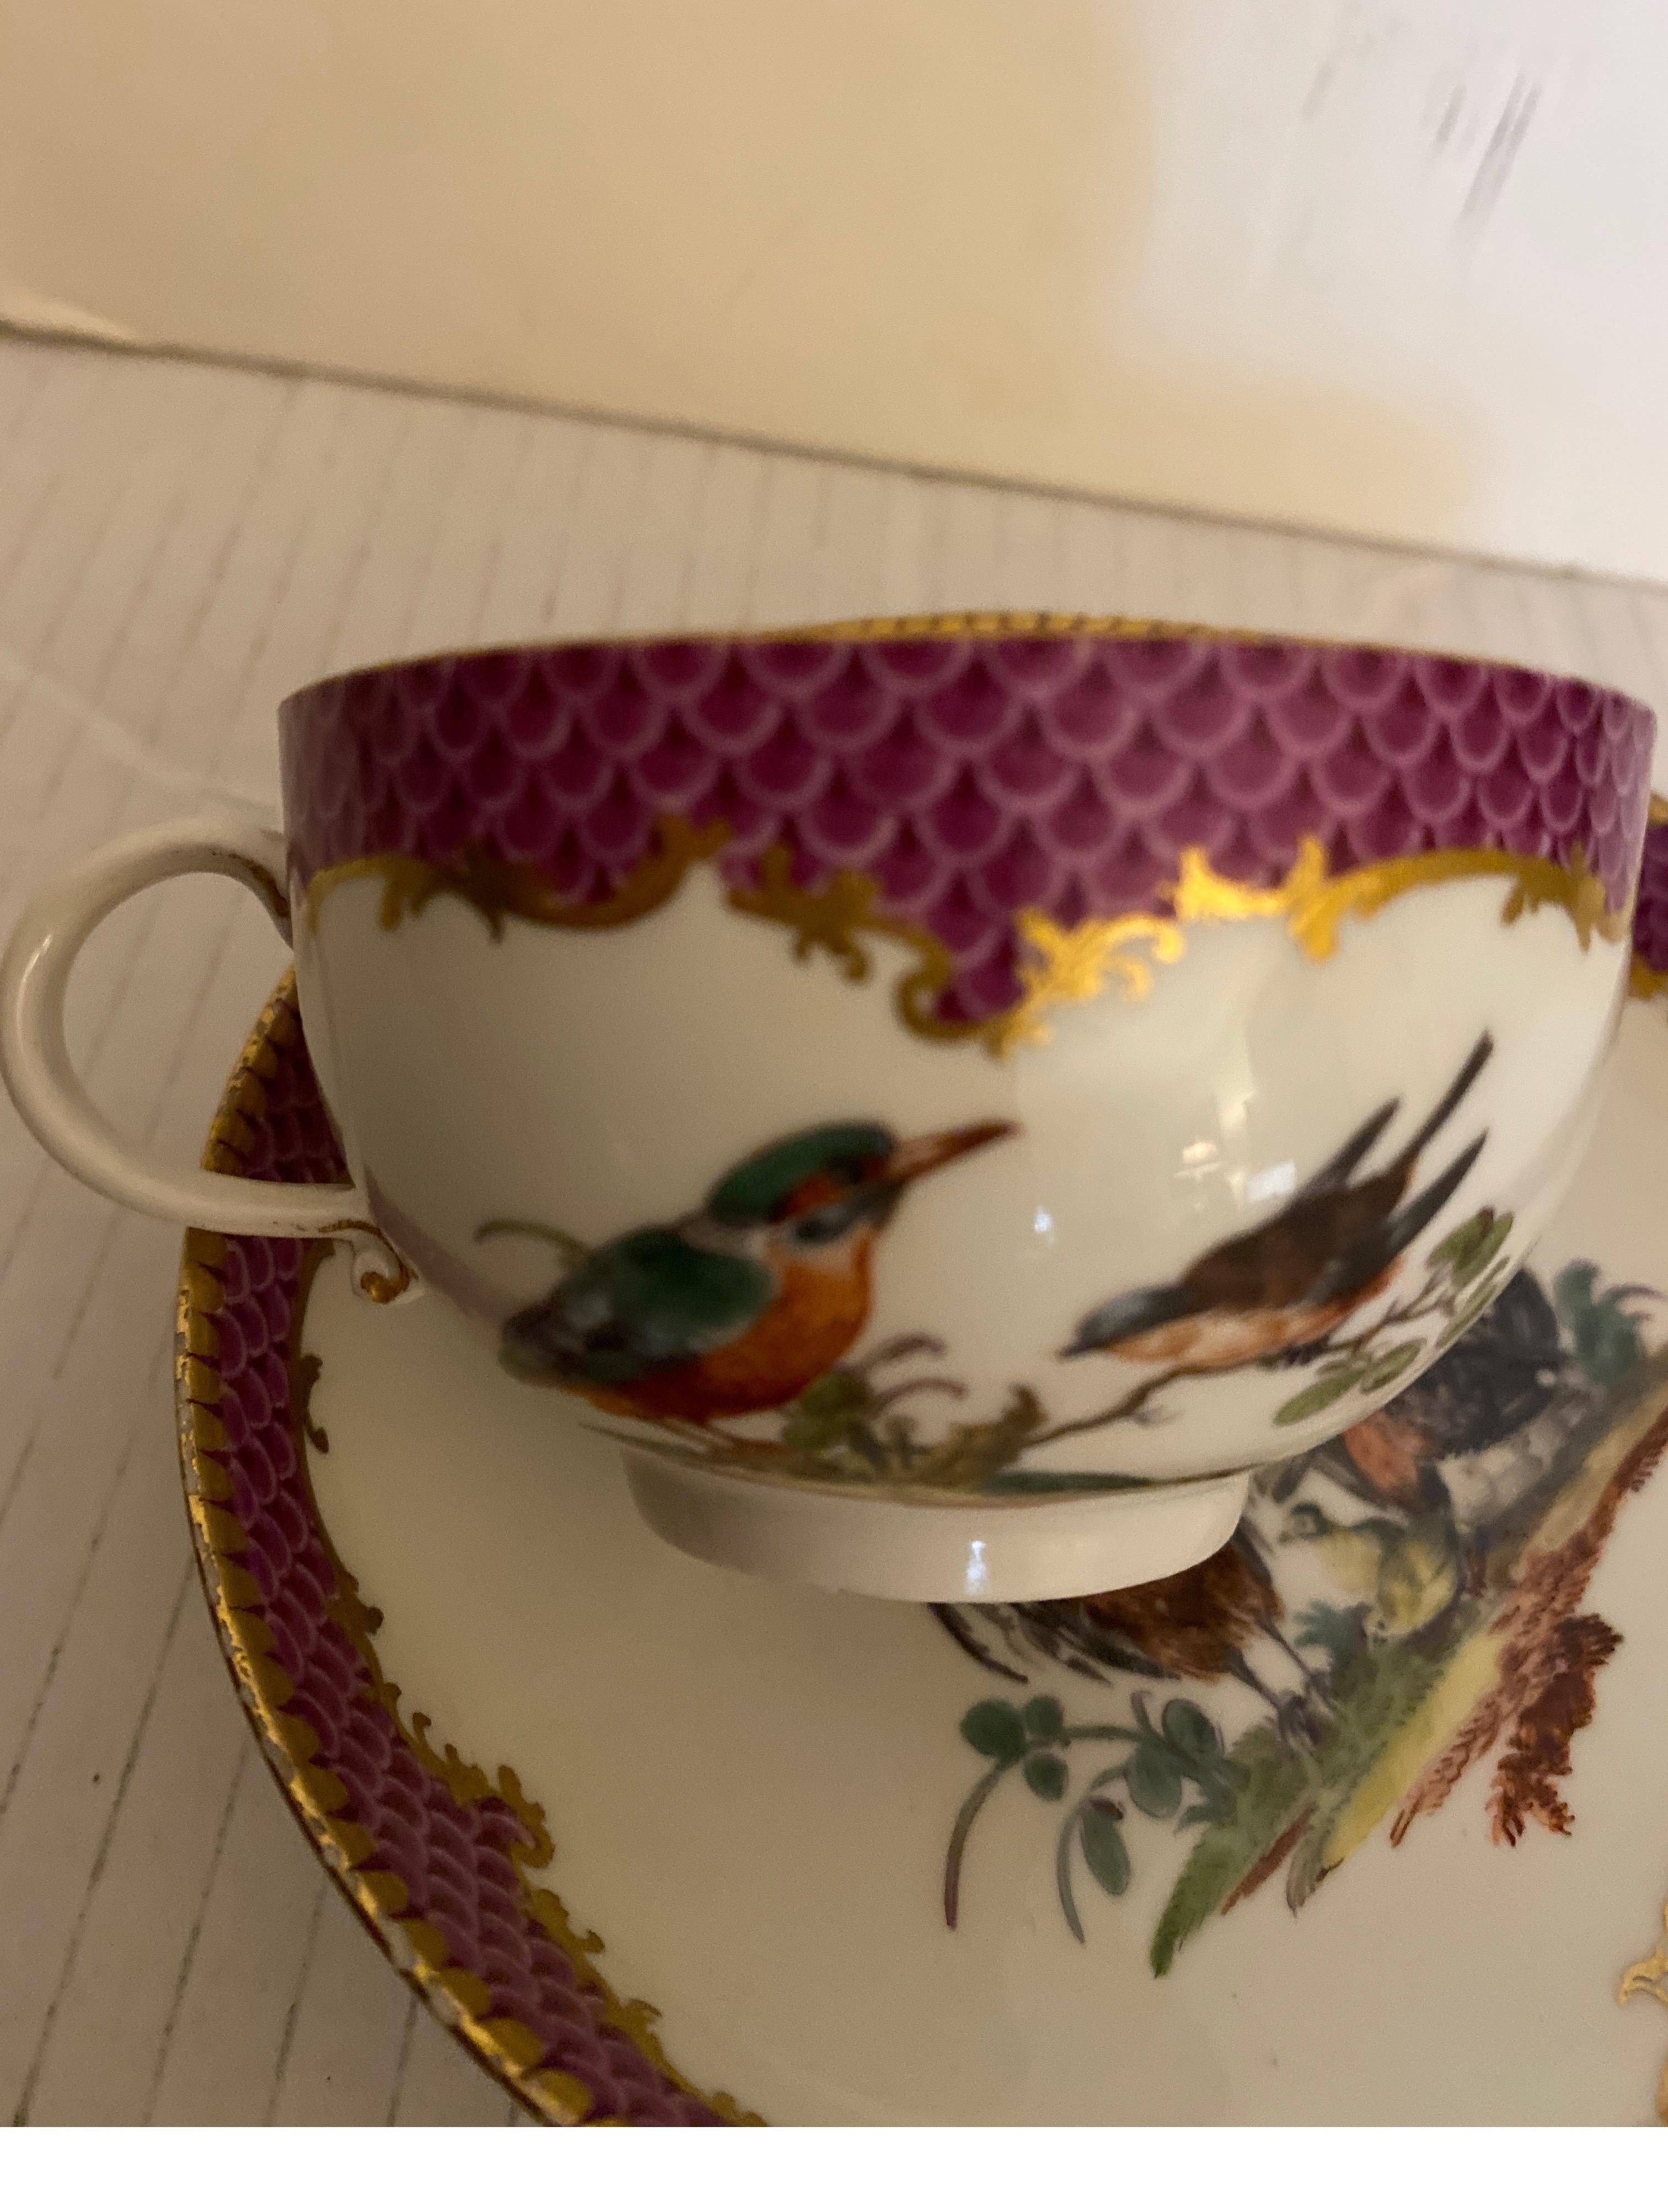 Petite tasse et soucoupe fantaisistes de Meissen du 19e siècle. La bordure violette à décor doré d'oiseaux et d'insectes. La soucoupe mesure 5 pouces de diamètre et la tasse 2,75 pouces de diamètre, sans compter l'anse.